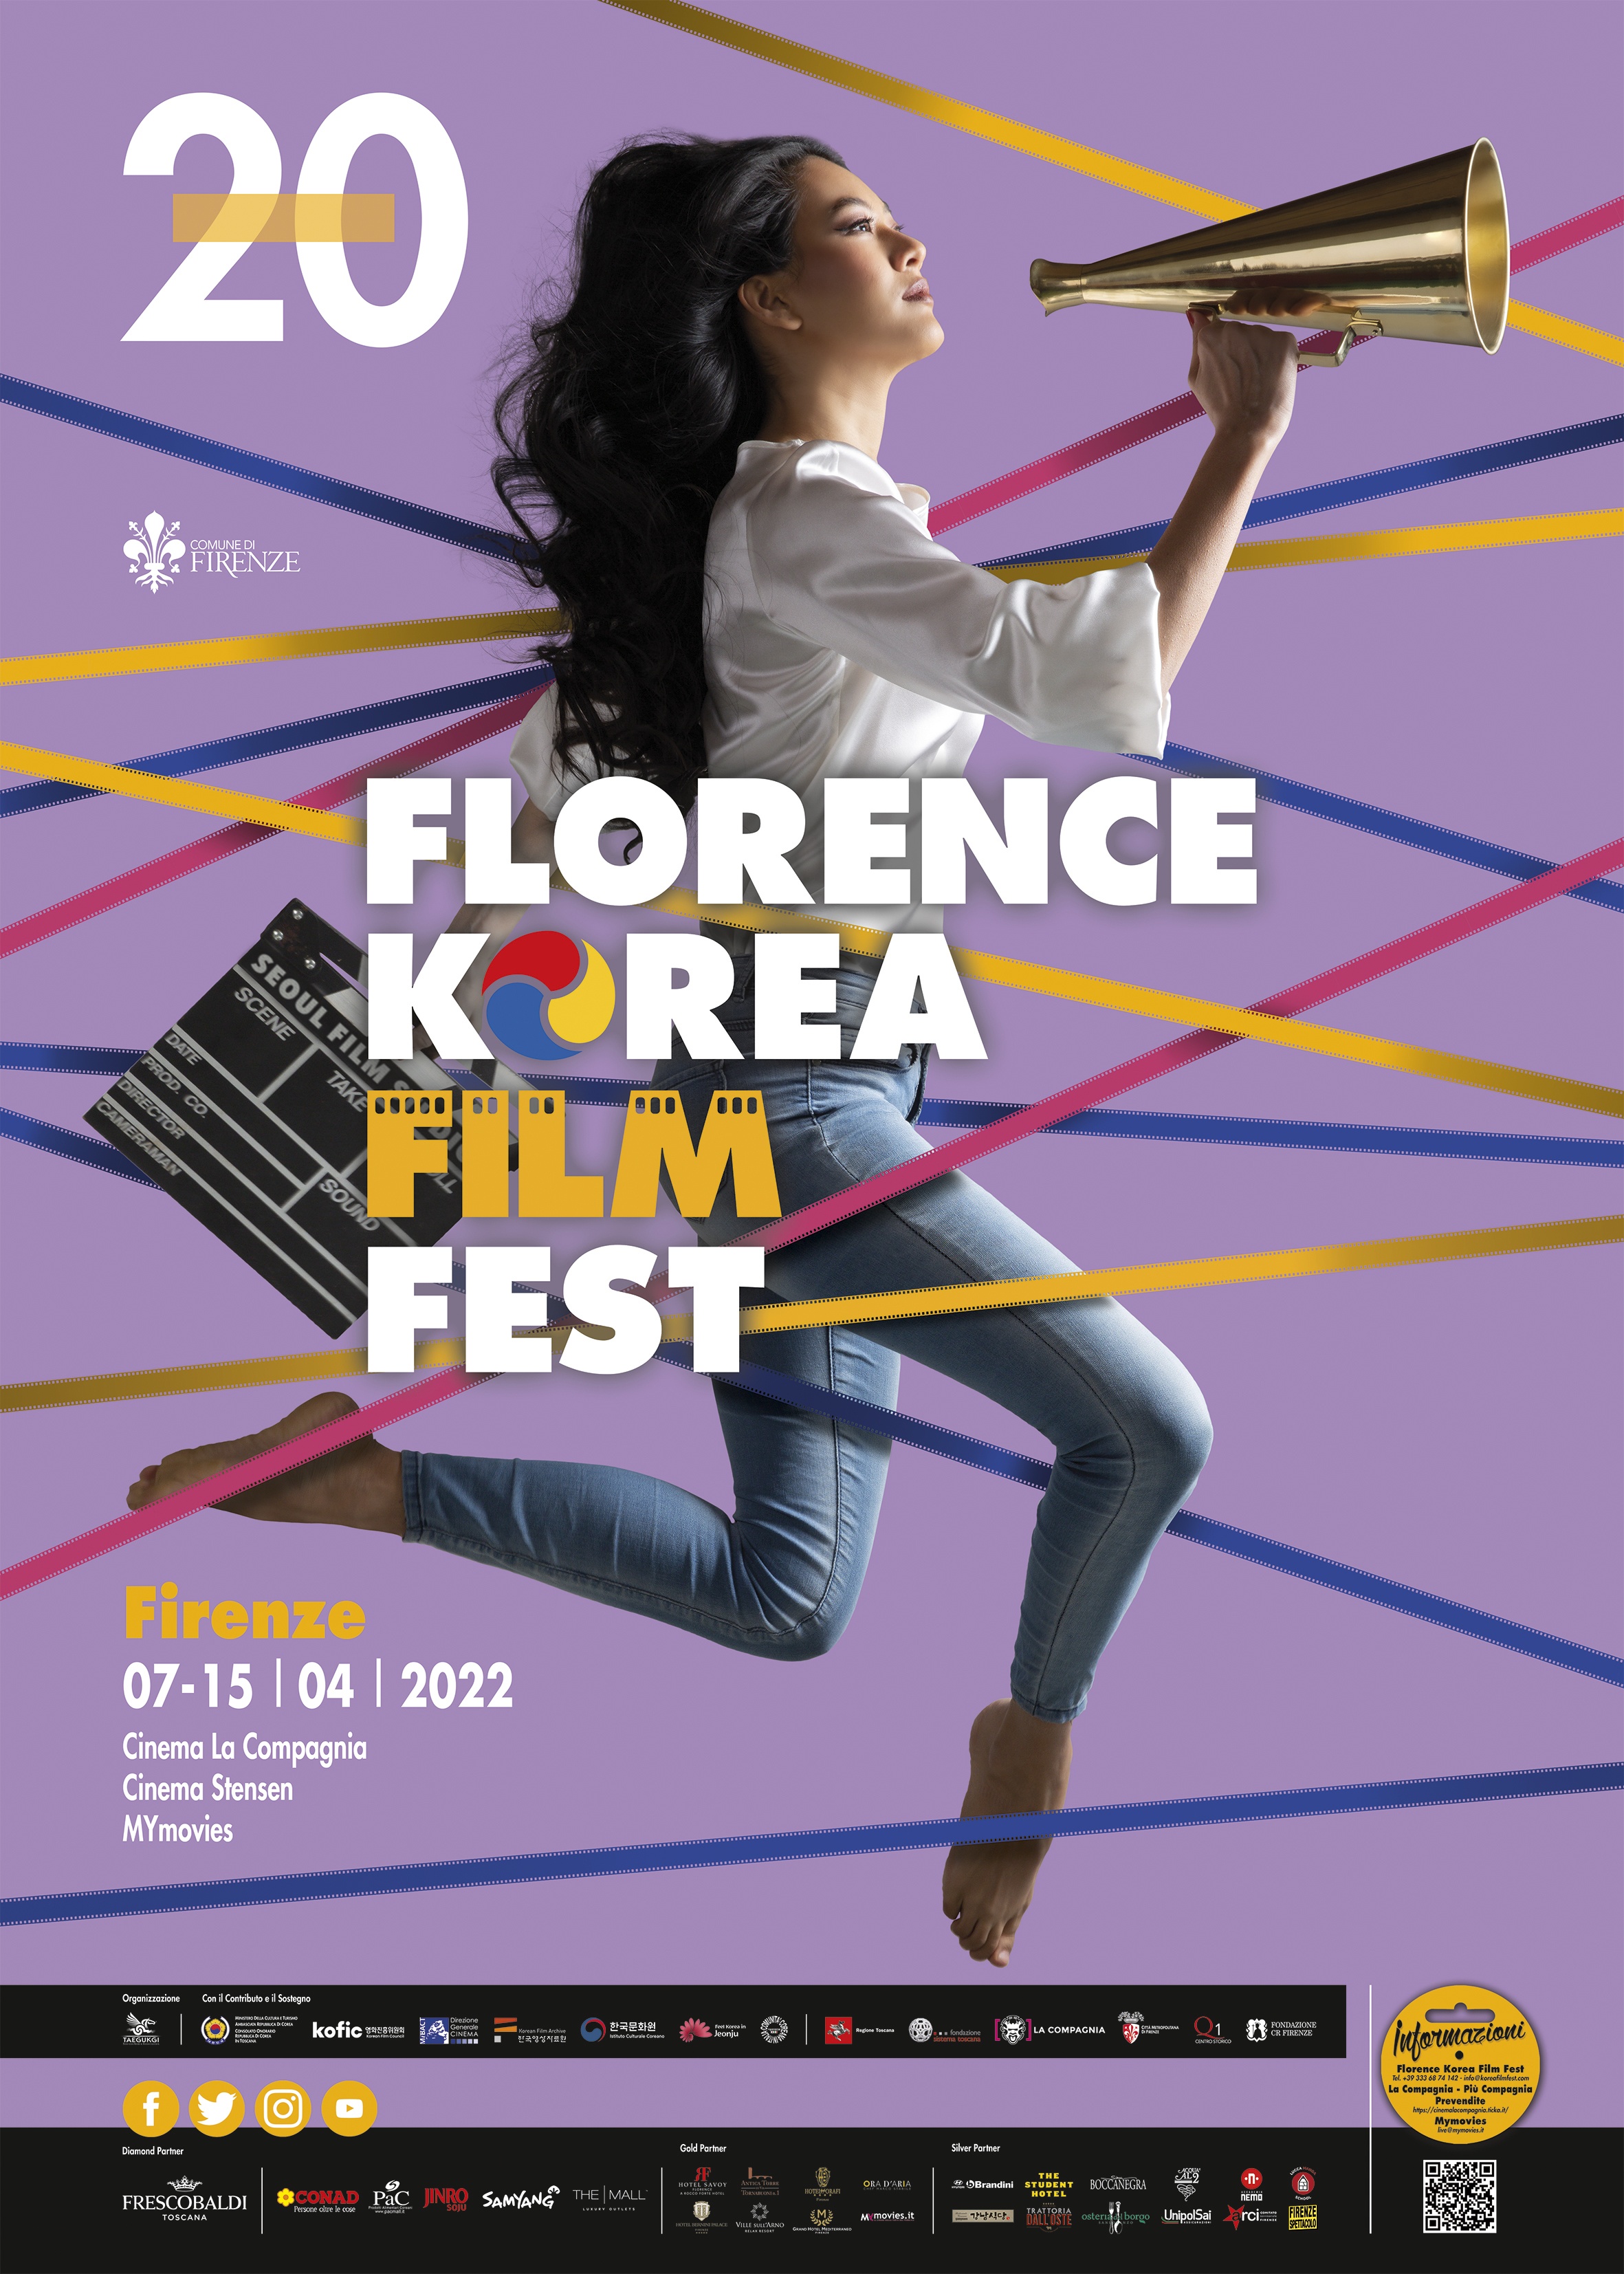 Florence Korea Film Fest 20esima edizione, il poster ufficiale